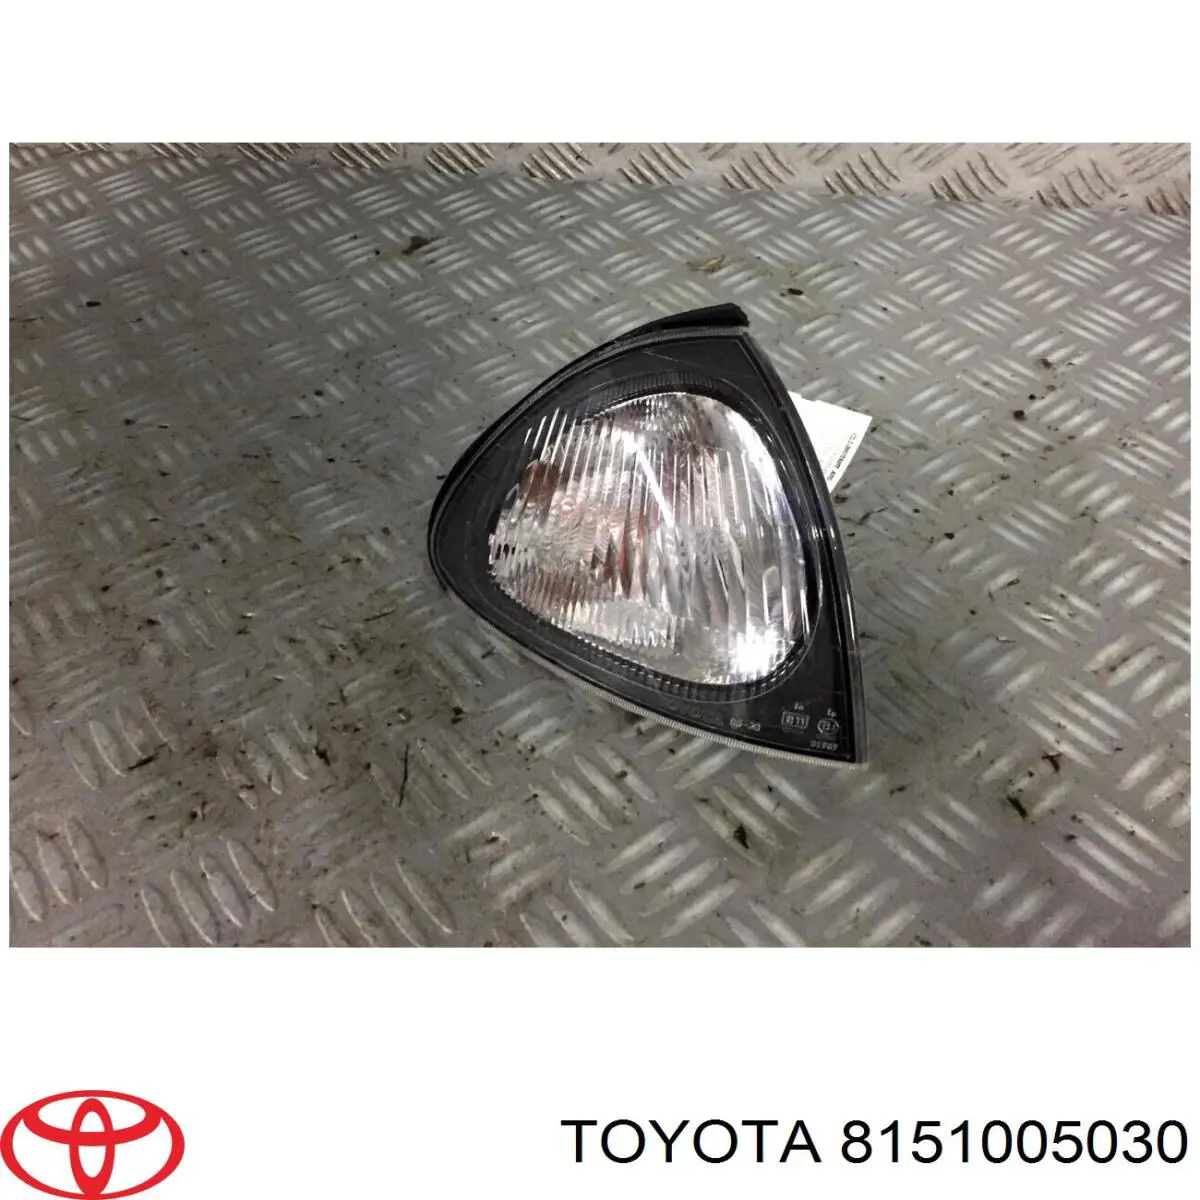 Указатель поворота правый Toyota 8151005030